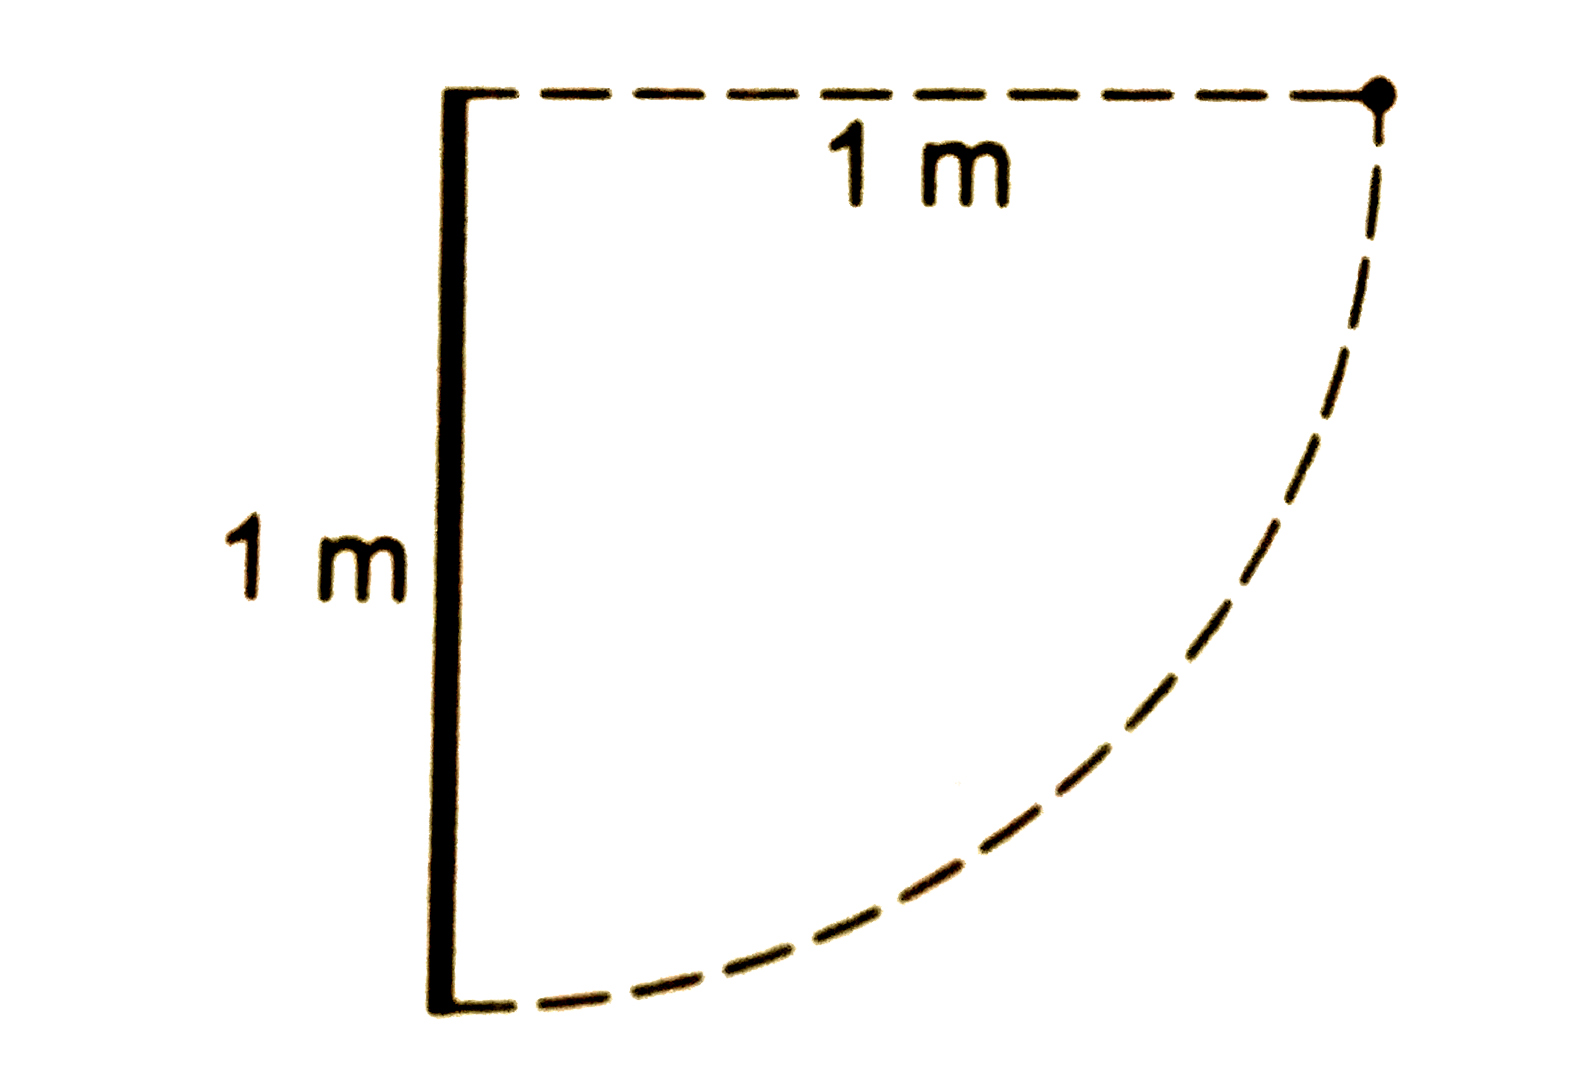 240g द्रव्यमान की 1 m लबी छड़ अपने ऊपरी सिरे से लटकाई गई है। यह इस सिरे के परित ऊर्ध्वाधर तल मे स्वतंत्र रूप से घूम सकती है (चित्र 18.E11) छड़ के ऊपरी सिरे से 1 m लबी रस्सी की सहायता से 100 g द्रव्यमान का एक कण जुड़ा हुआ है। प्रारंभ में छड़ ऊर्ध्वाधर है तथा रस्सी को क्षैतिज दिशा में तानकर रखा गया है। अब निकाय को स्थिरावस्था से छोड़ दिया जाता है। कण छड़ के निचले सिरे से टकराकर वहाँ चिपक जाता है छड़ कितने अधिकतम कोण से दूसरी ओर ऊपर उठेगी